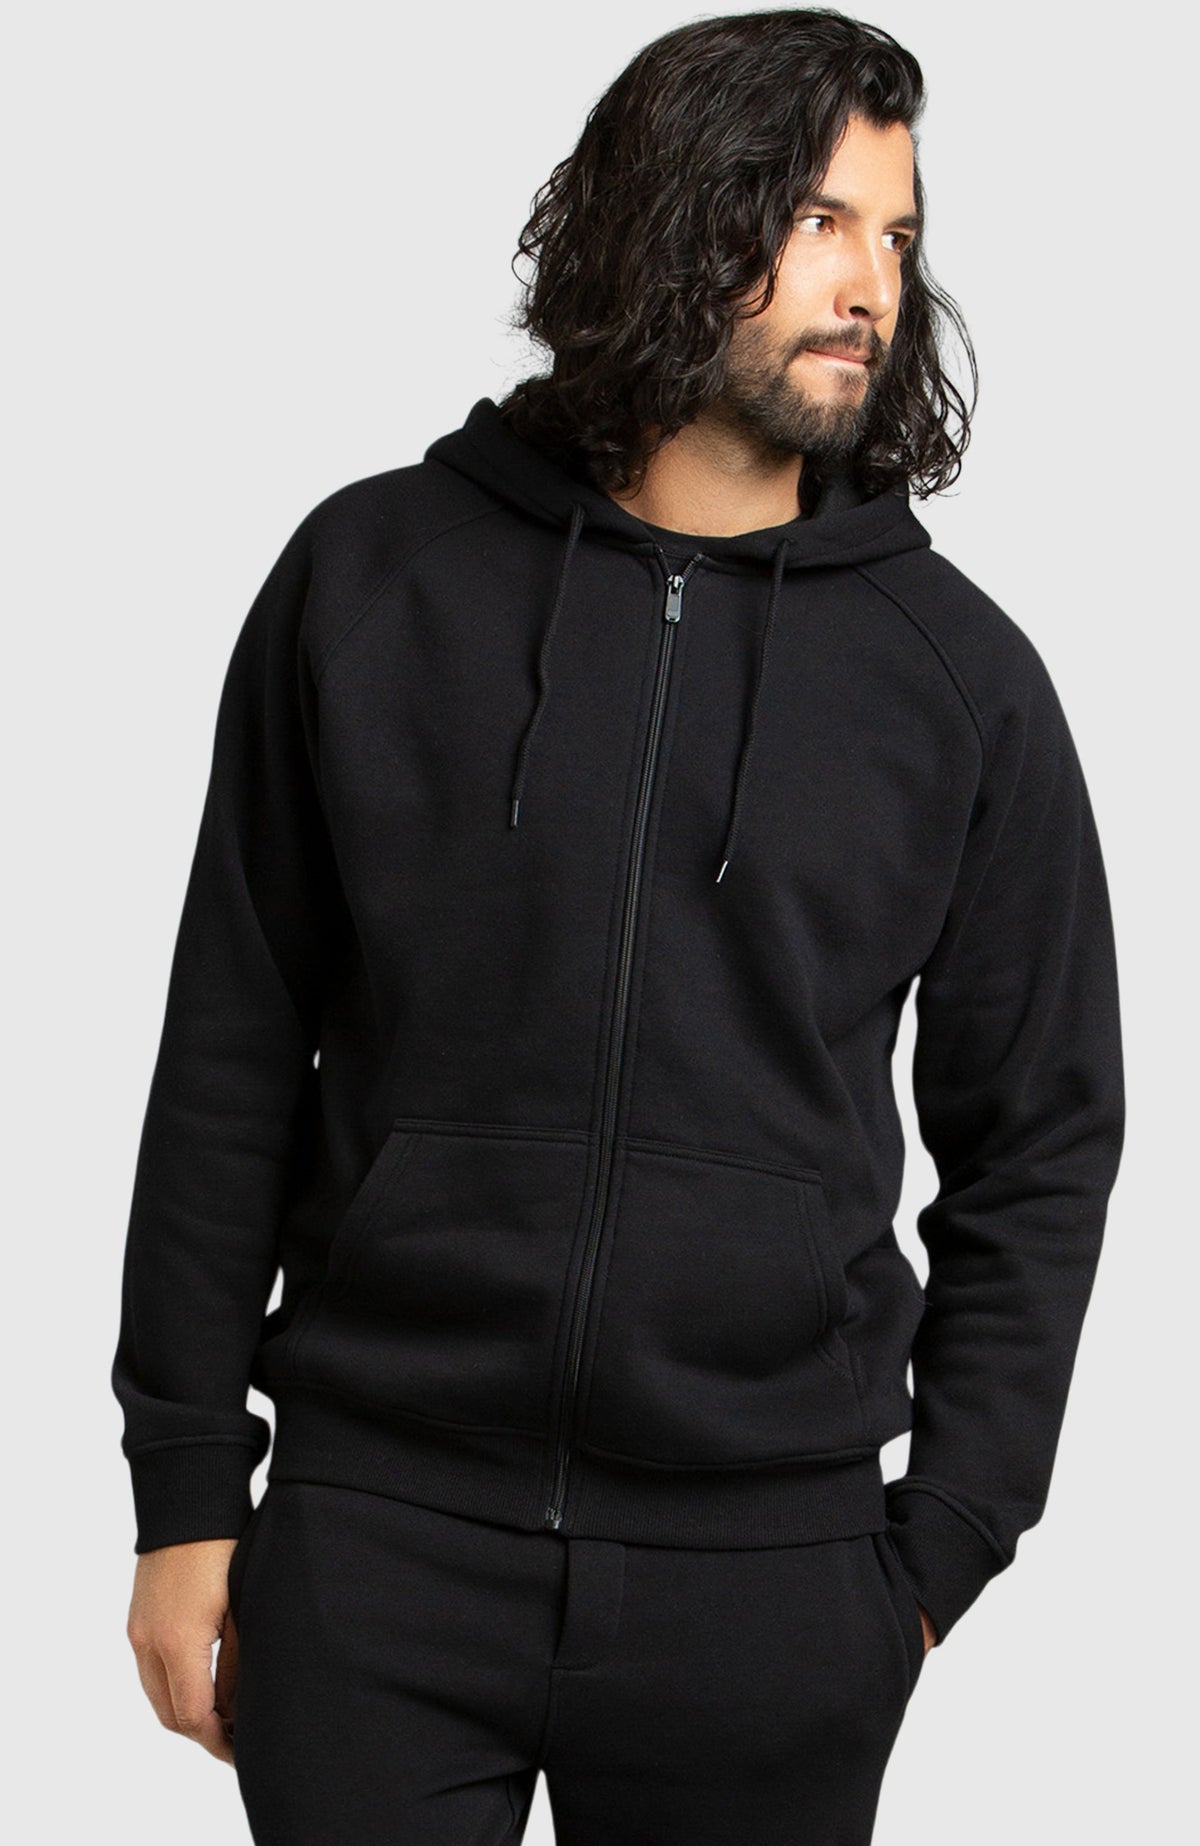 Buy H4X men loose fit fleece logo hoodie grey heather Online